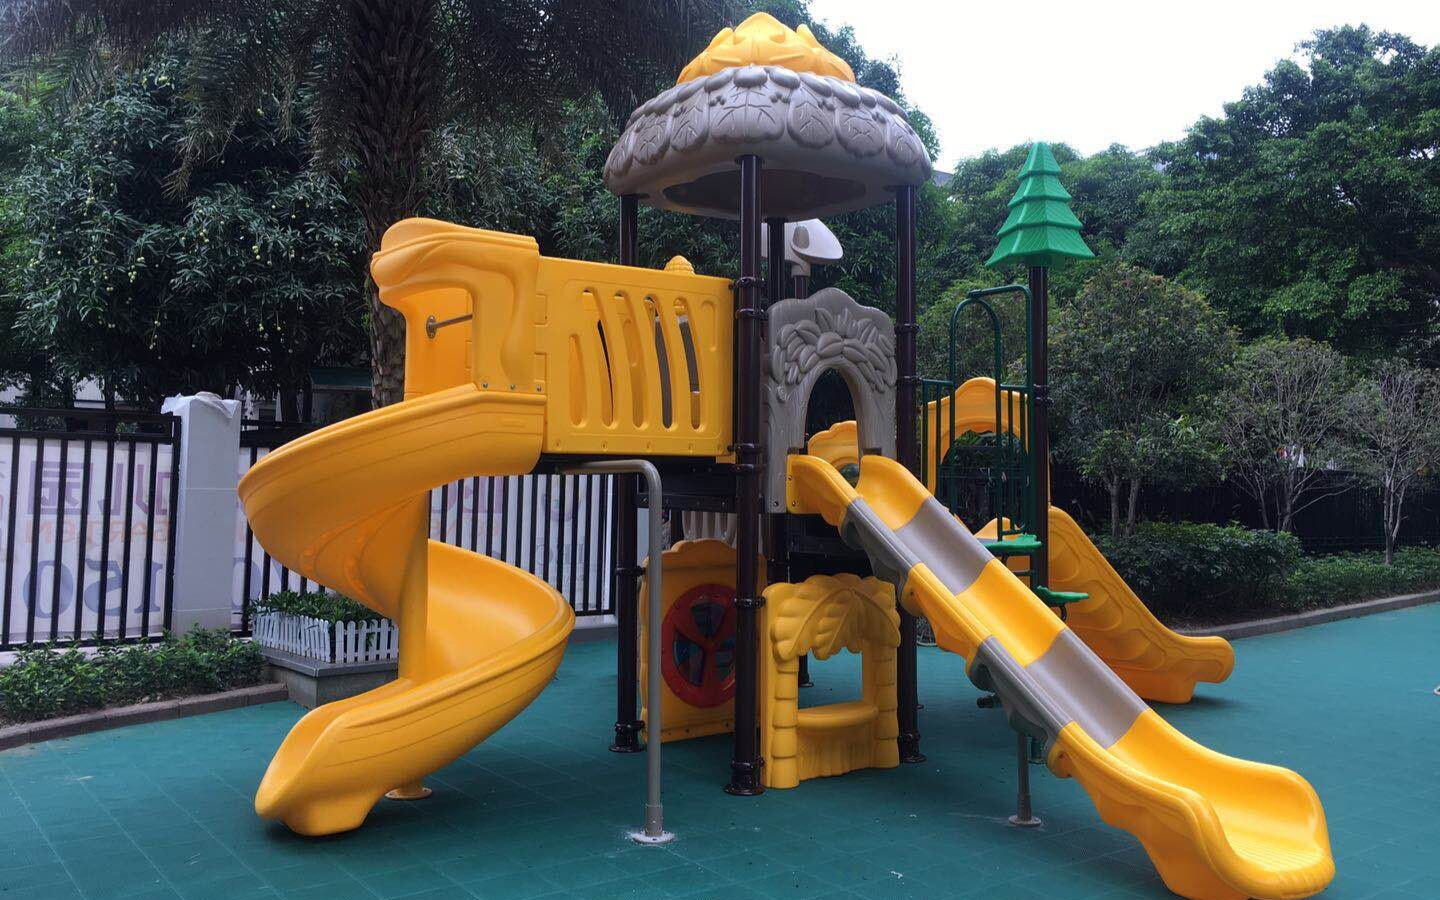 Qitele Playground Equipment